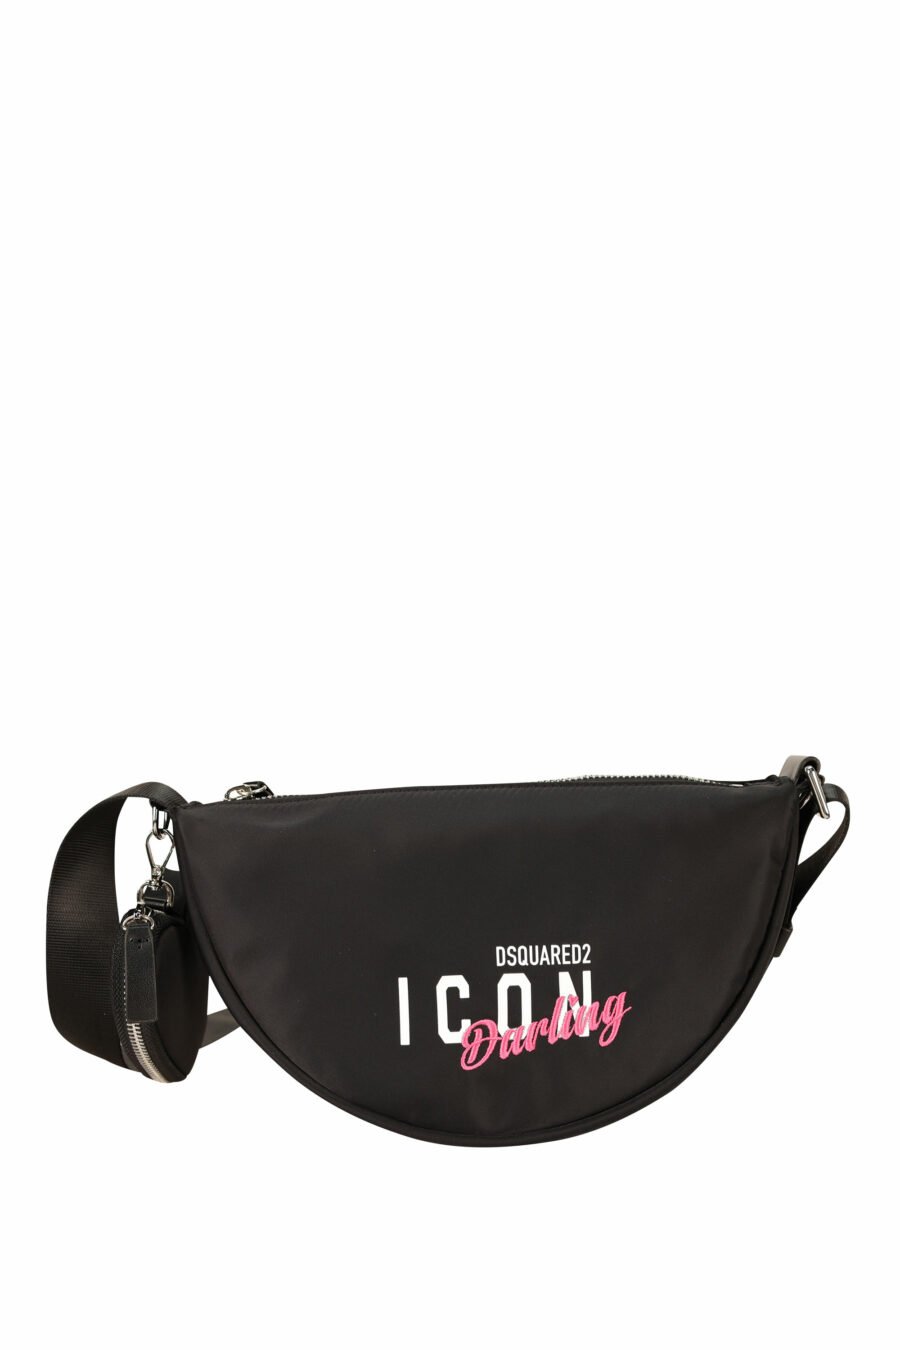 Black shoulder bag with "icon darling" logo - 8055777276310